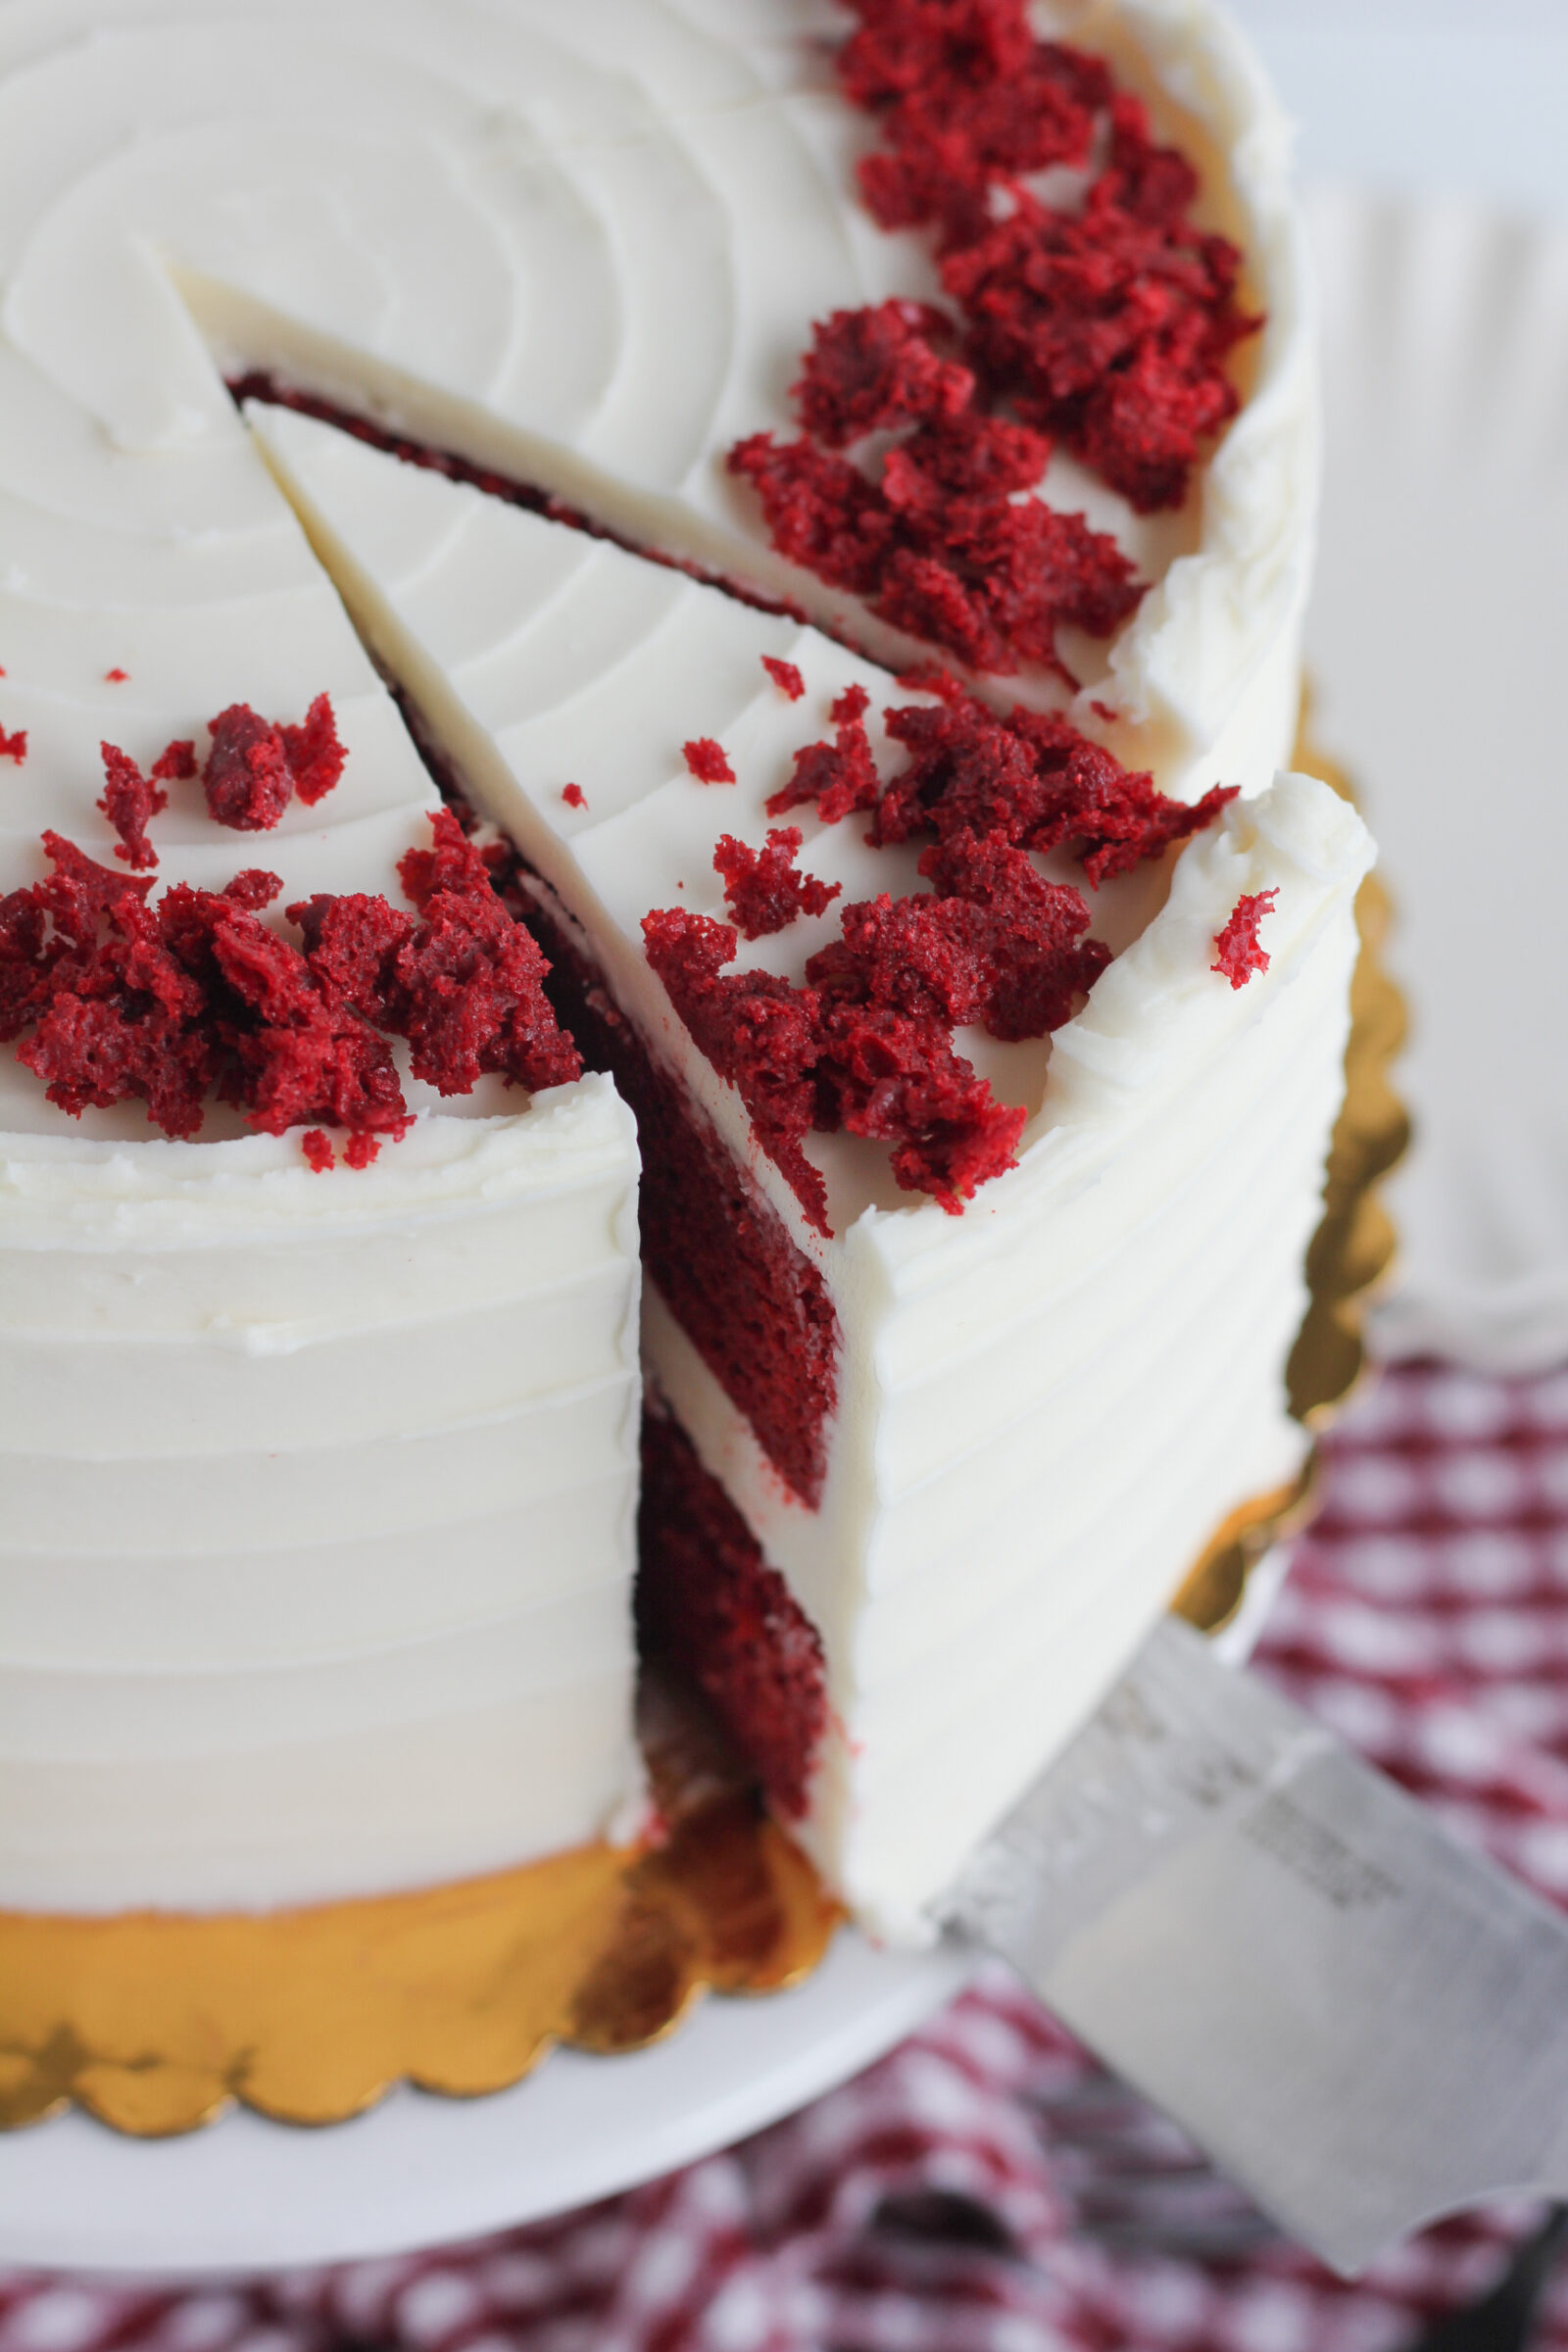 The BEST Red Velvet Desserts - Best Recipes